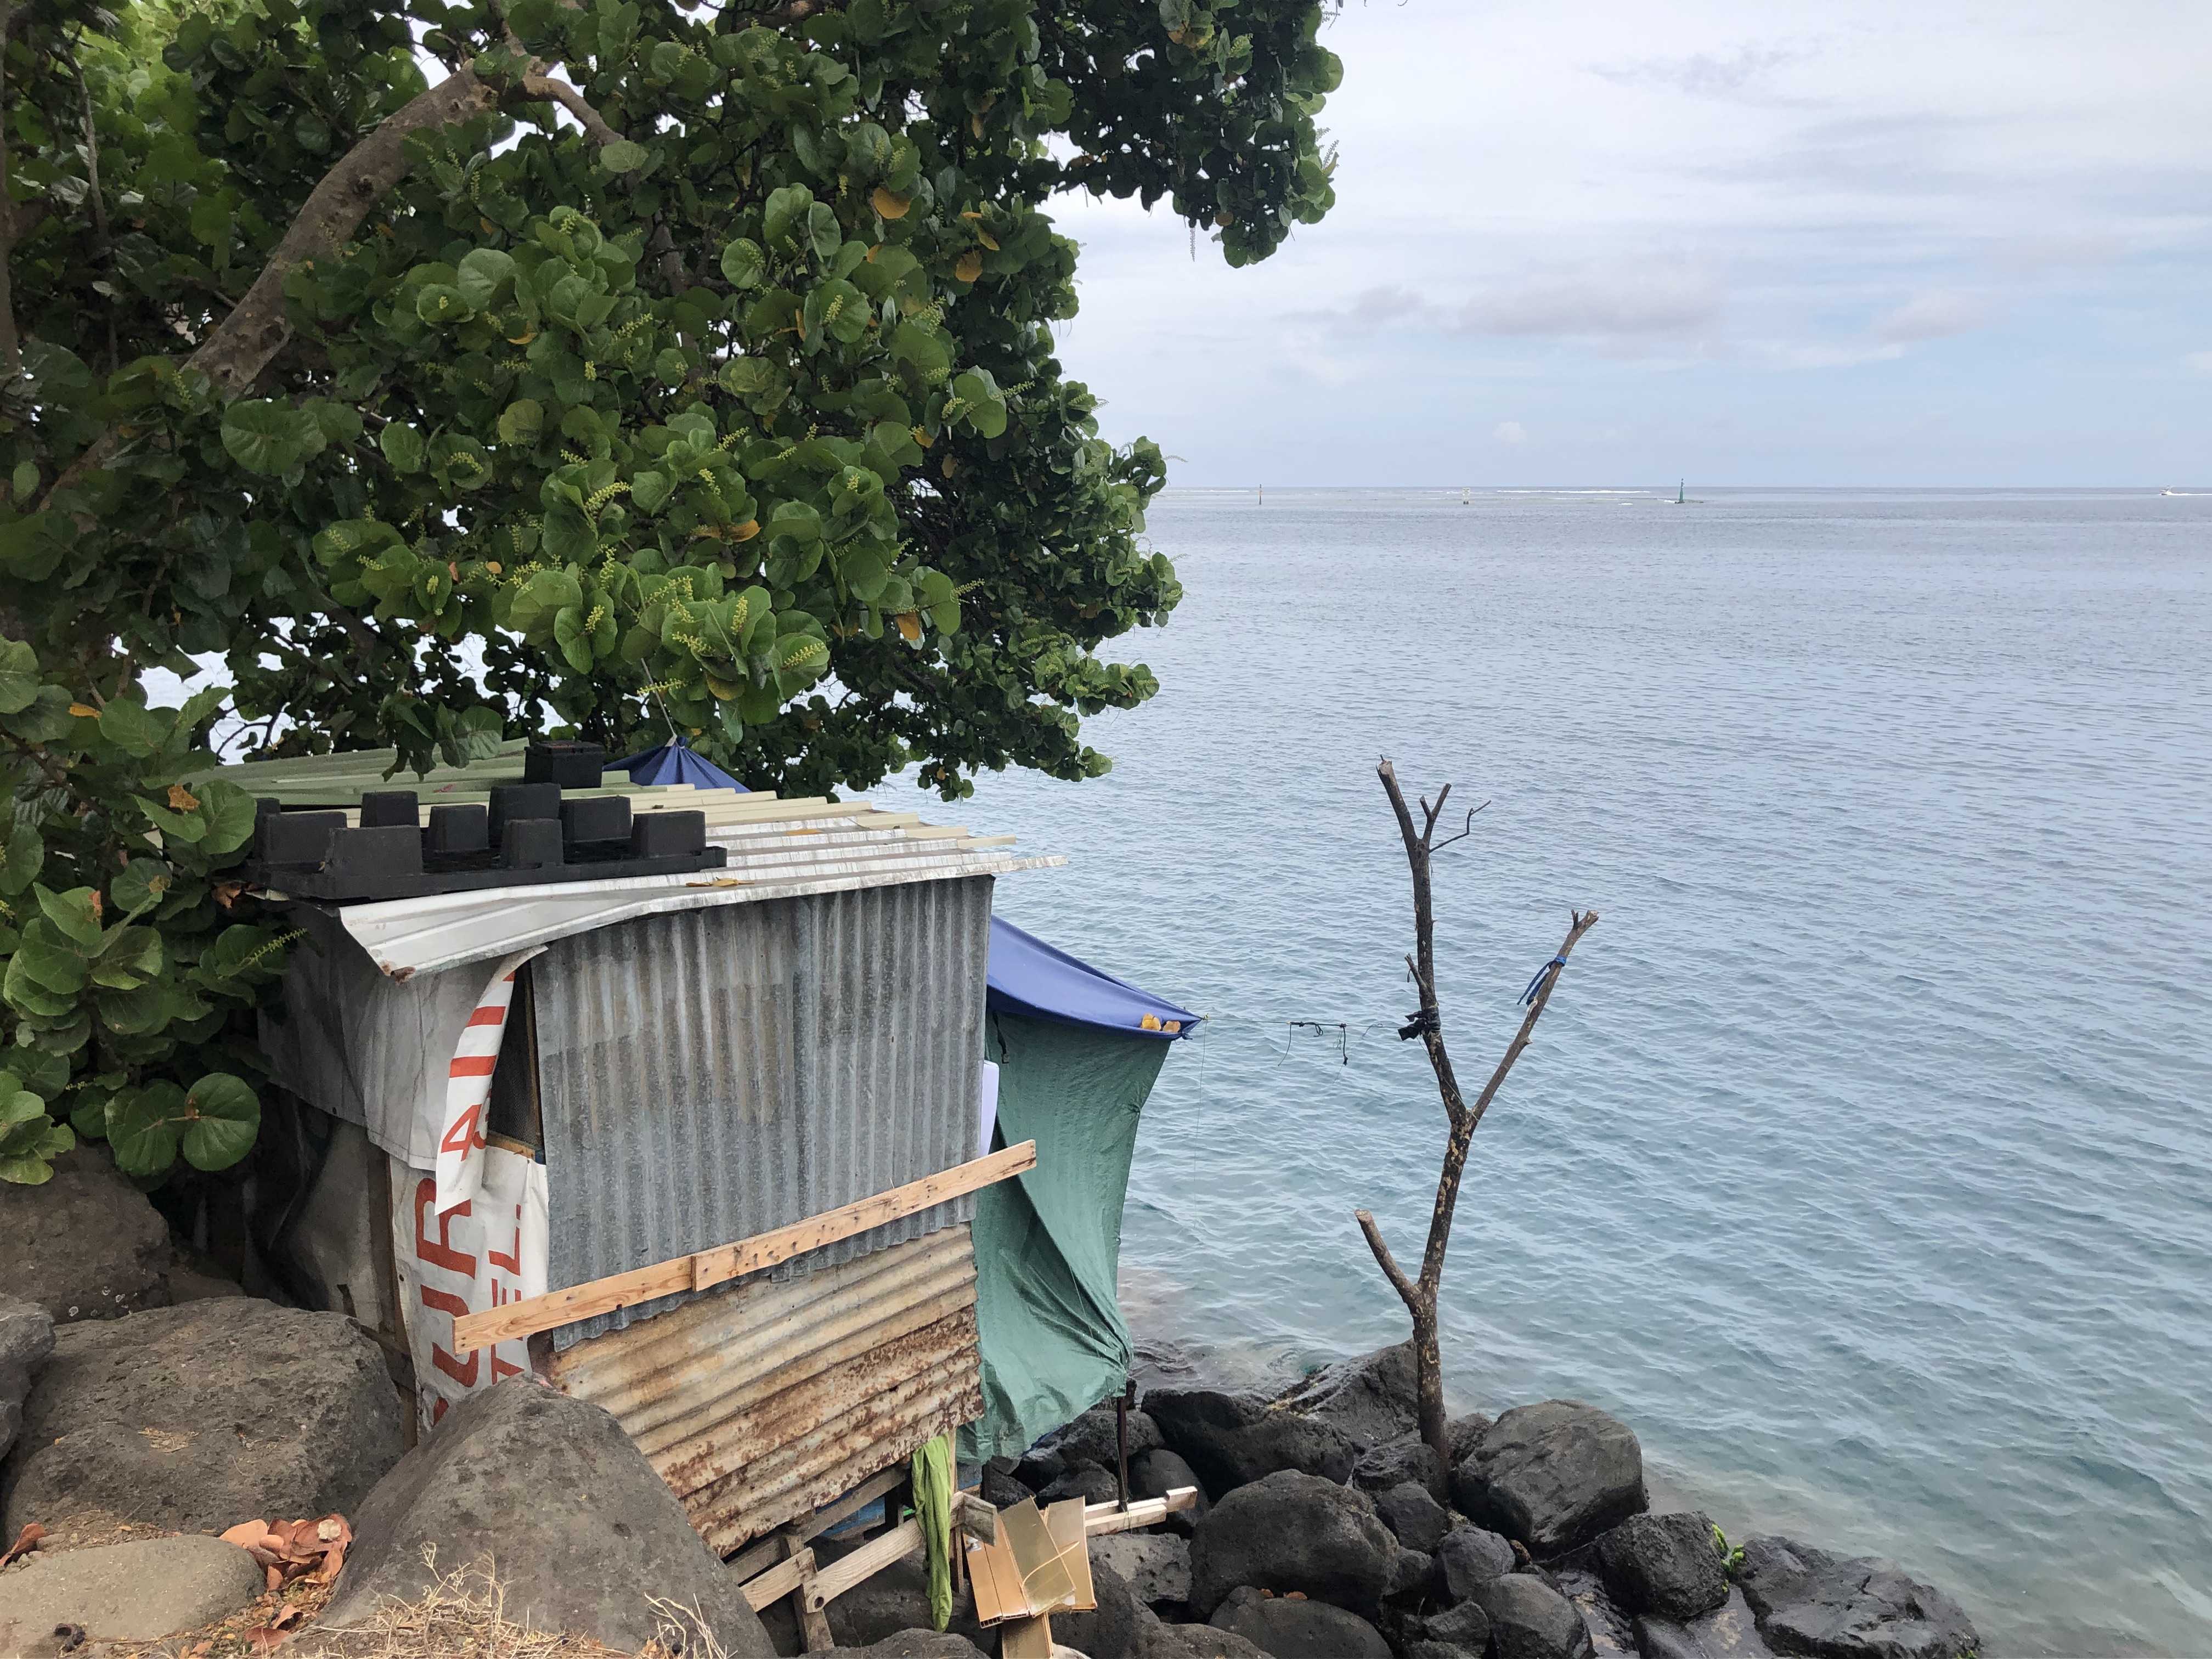 Si la vue est imprenable sur la rade de Papeete, le confort de son côté, est des plus rudimentaires. Pas d'eau courante, pas d'électricité, sans oublier le passage constant de véhicules à quelques mètres de là, et les rochers en contre-bas.